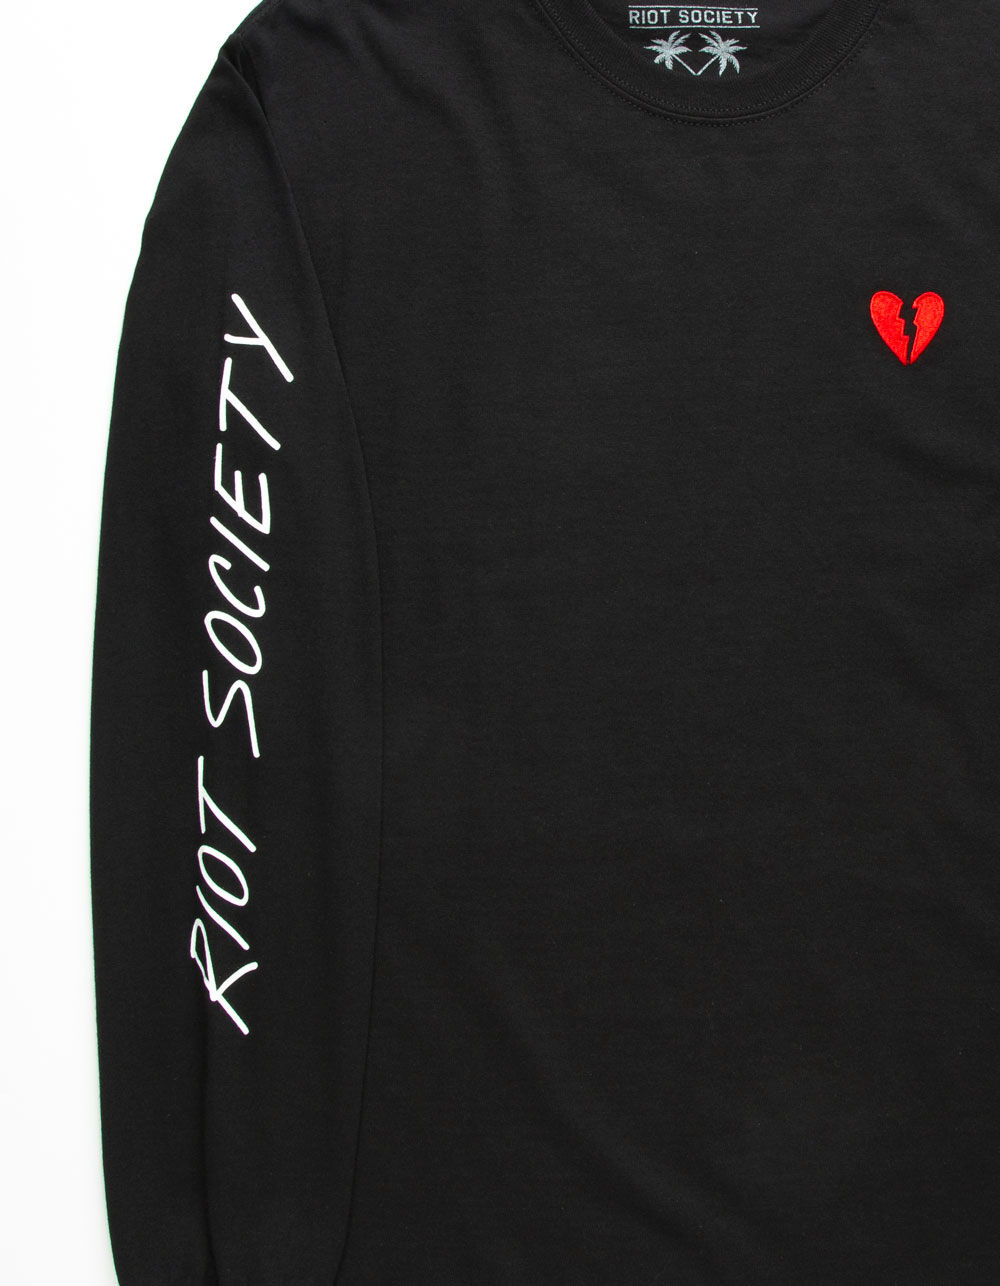 RIOT SOCIETY Broken Heart Embroidered Mens T-Shirt - BLACK | Tillys